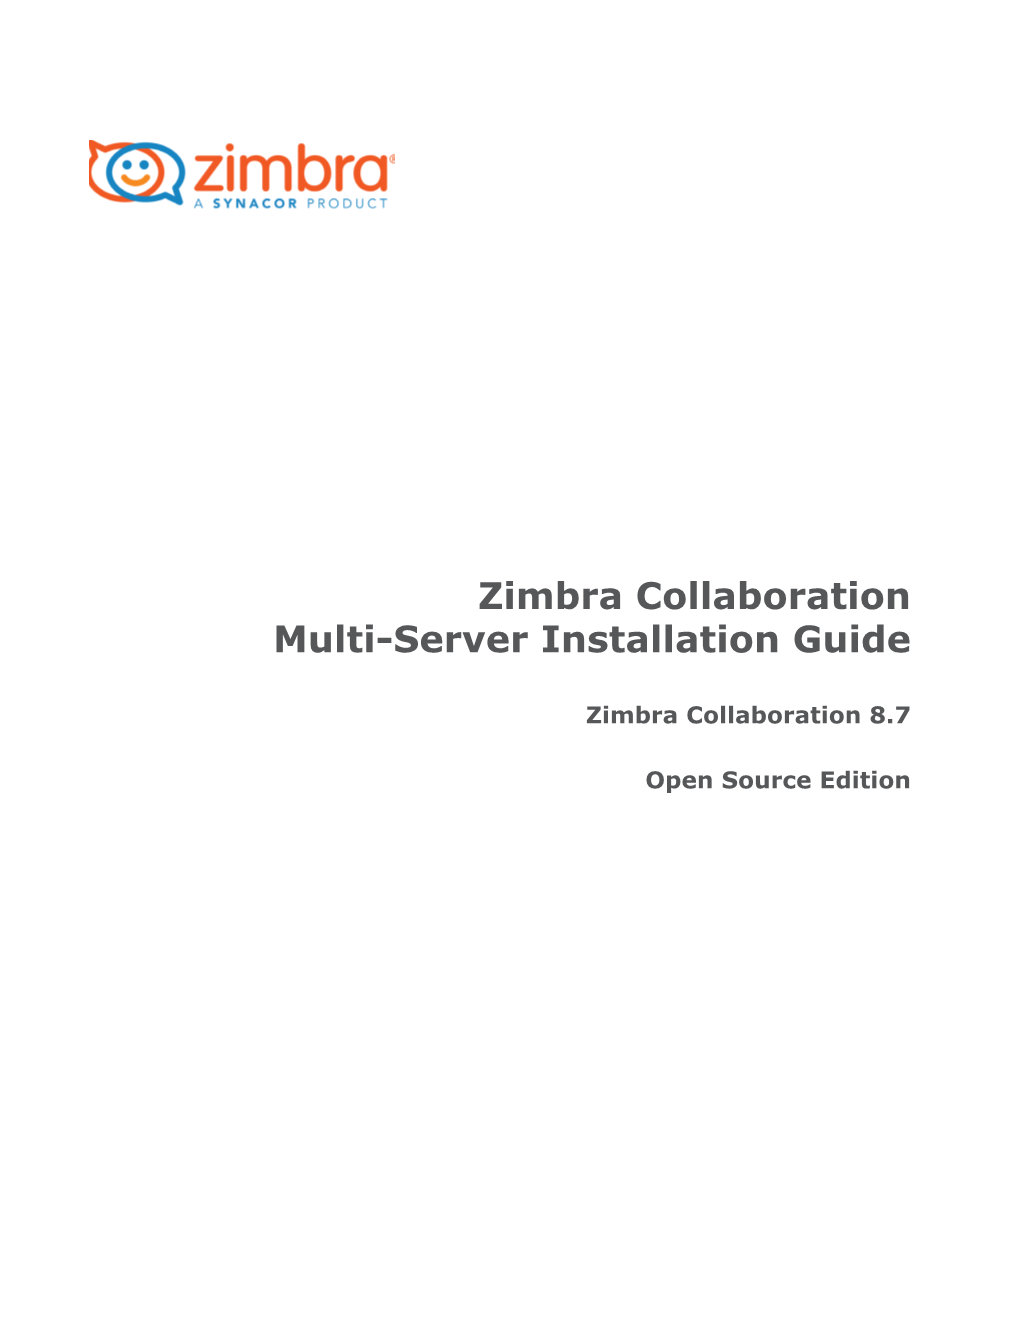 Zimbra Collaboration Multi-Server Installation Guide